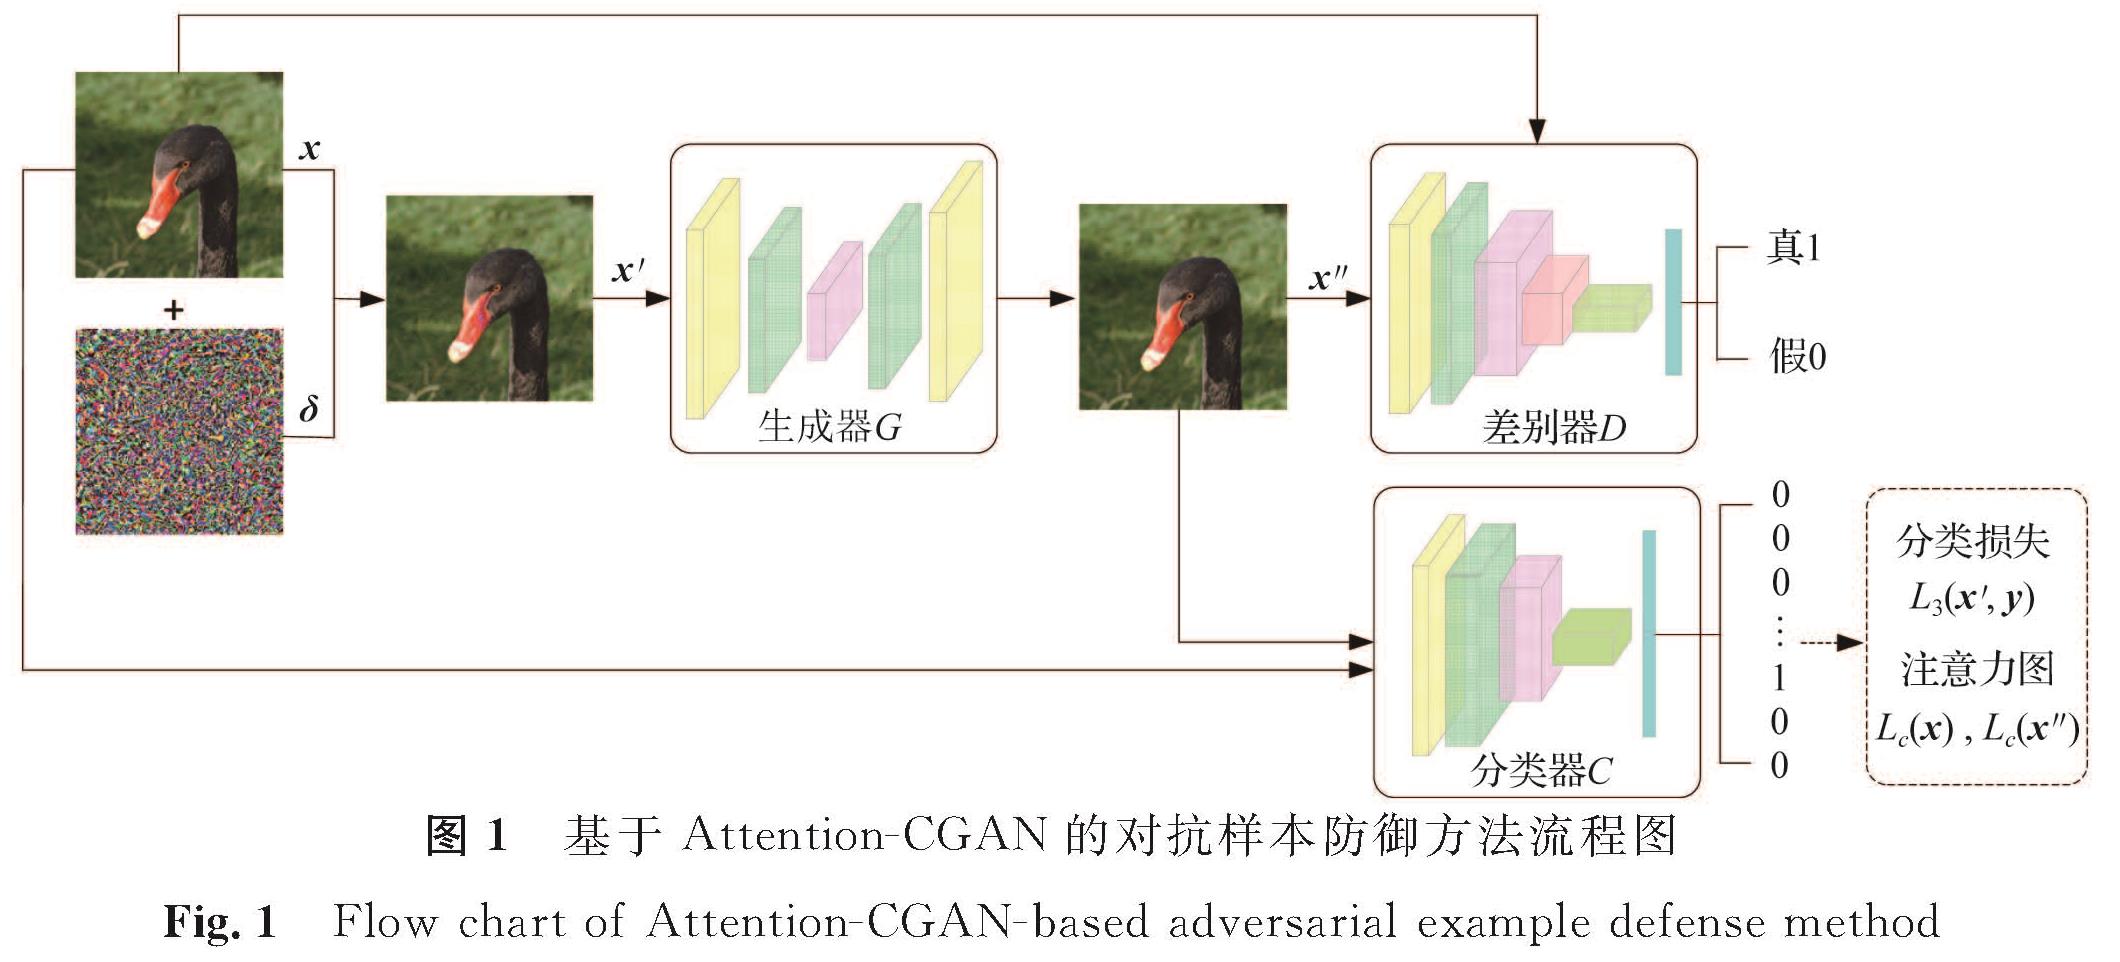 图1 基于Attention-CGAN的对抗样本防御方法流程图<br/>Fig.1 Flow chart of Attention-CGAN-based adversarial example defense method